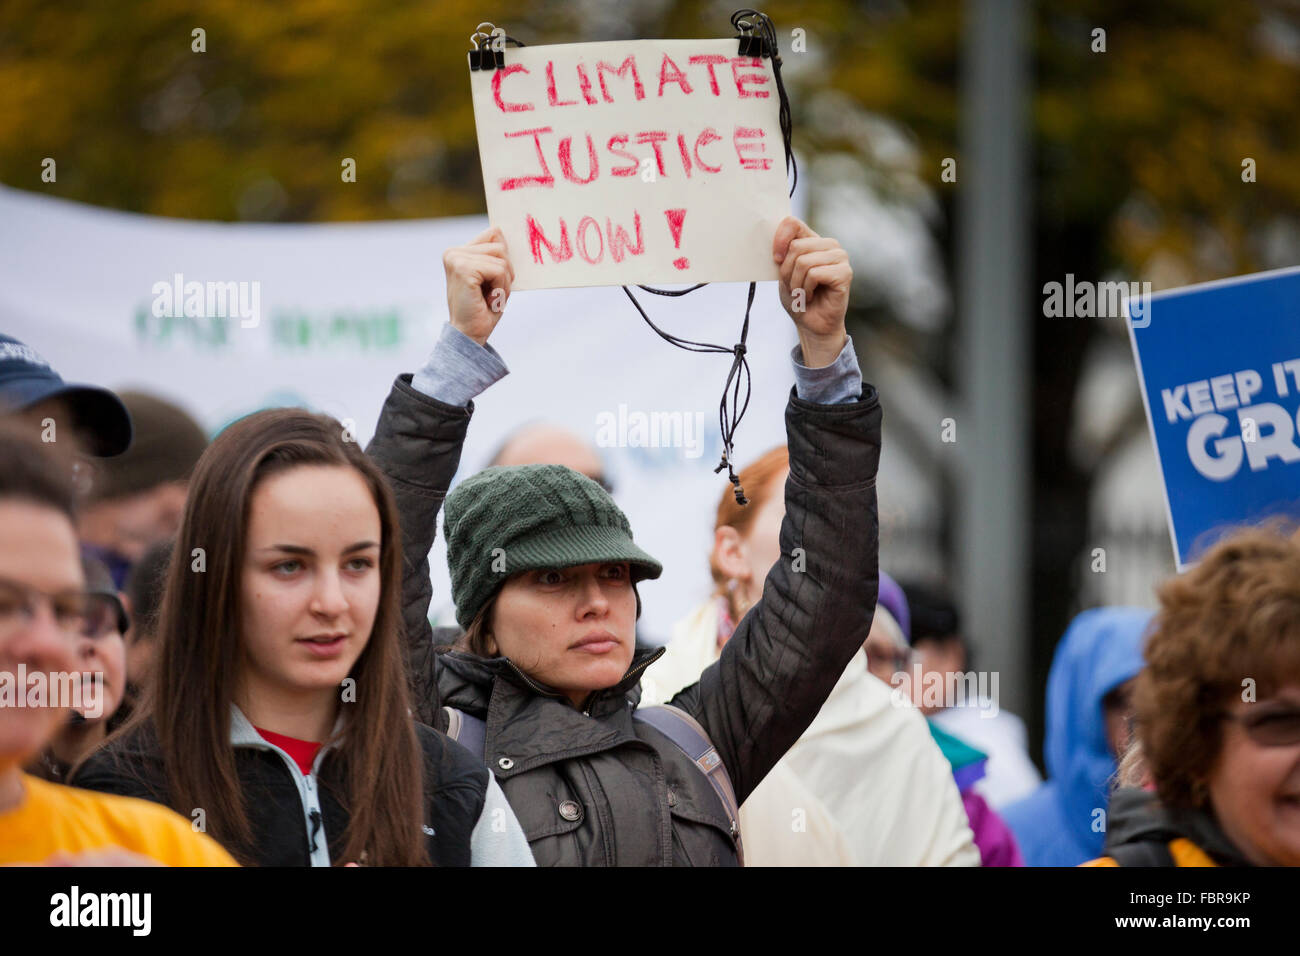 Novembre 21, 2015, Washington DC USA: attivisti ambientali protesta di fronte alla Casa Bianca (donna tenendo premuto 'giustizia climatica ora' segno) Foto Stock